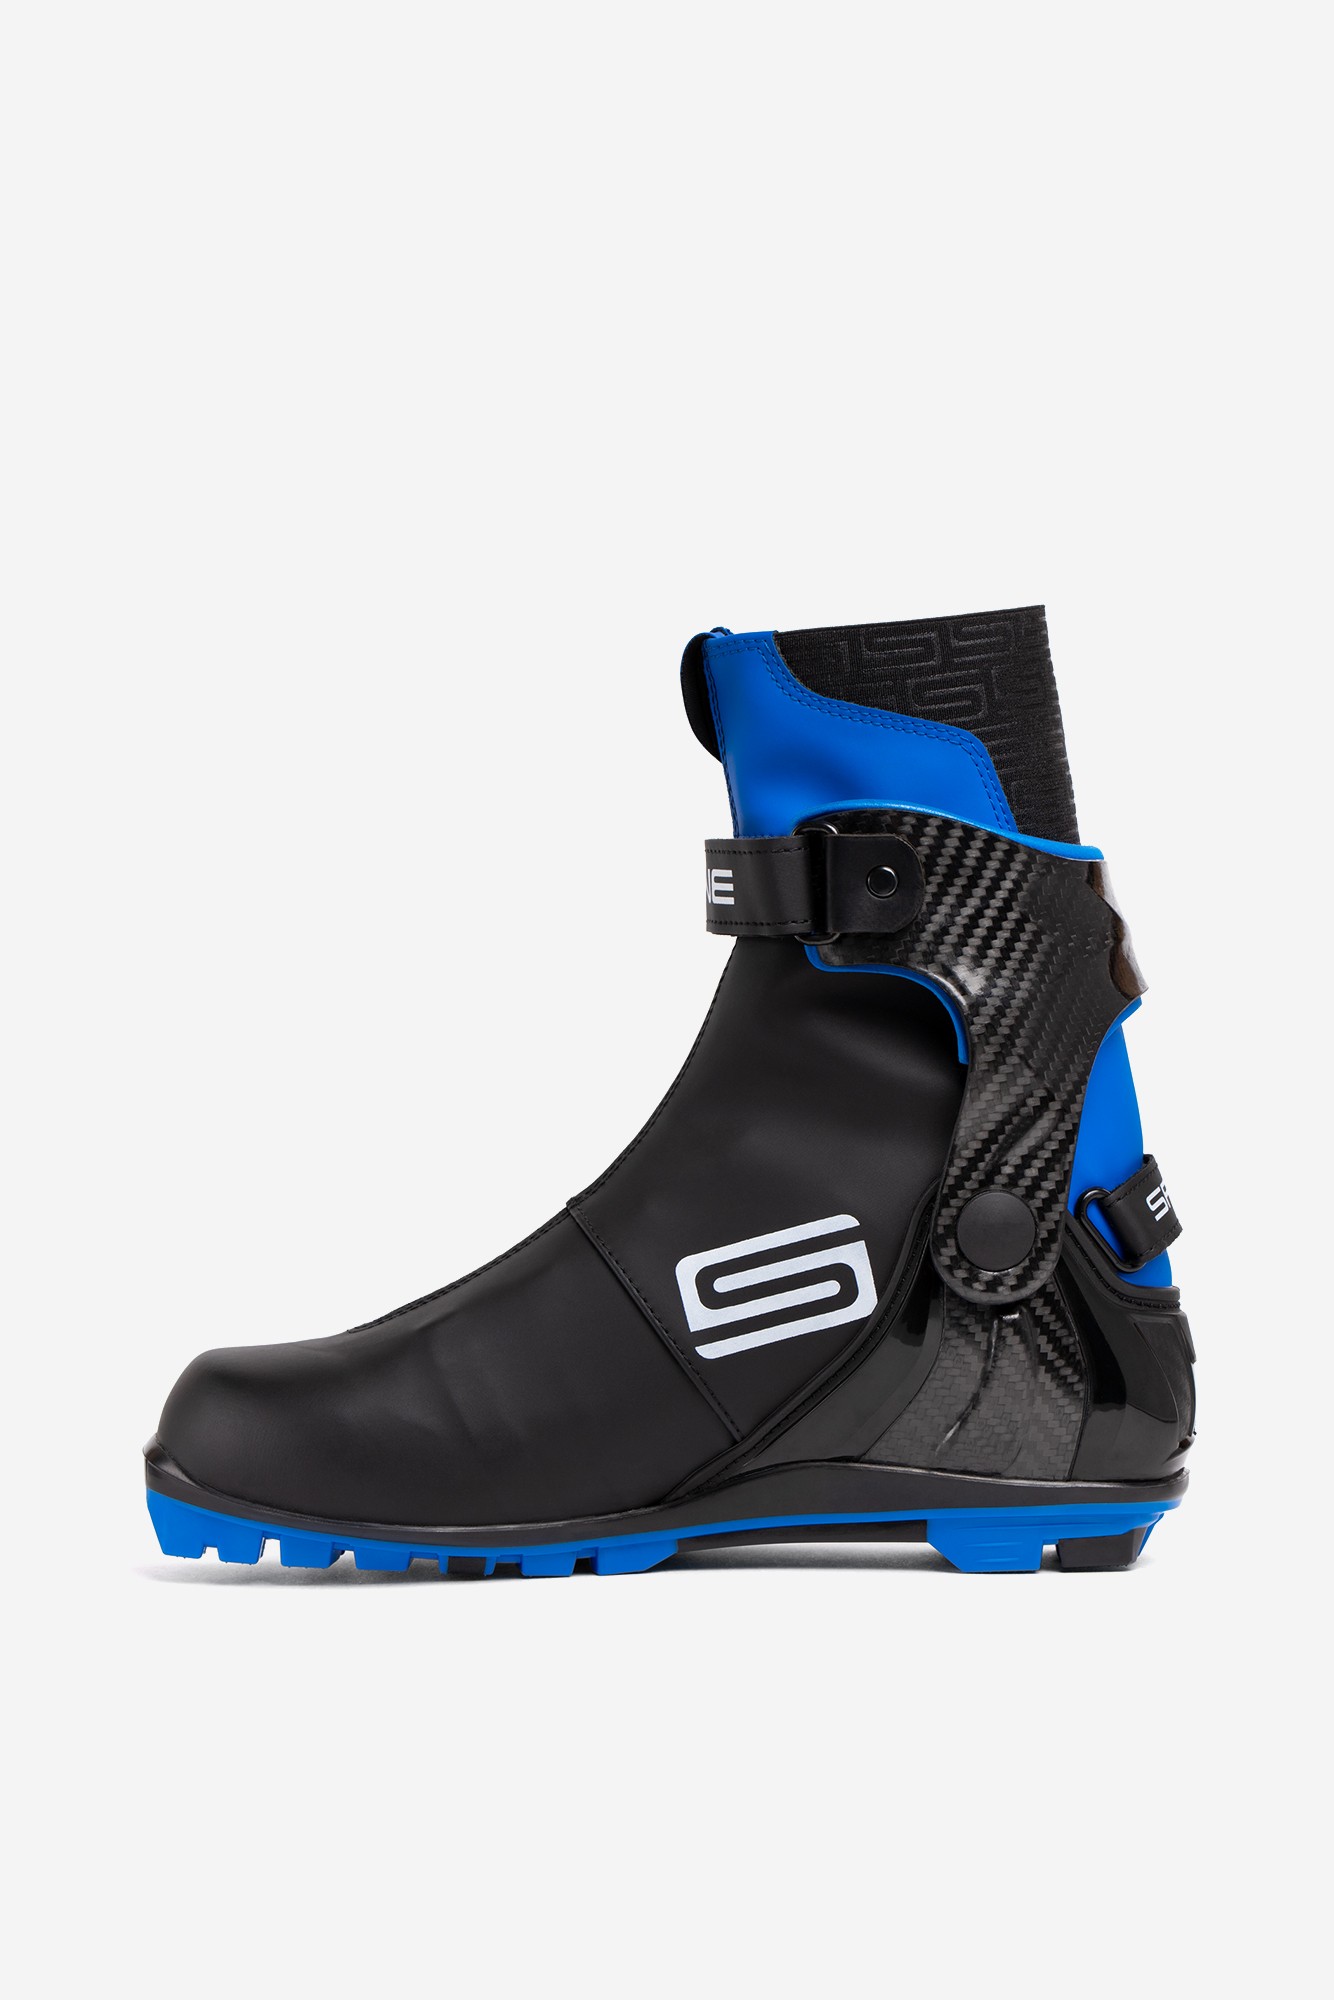 Лыжные ботинки NNN Spine Concept Carbon Skate 298-22 черный\синий 1334_2000